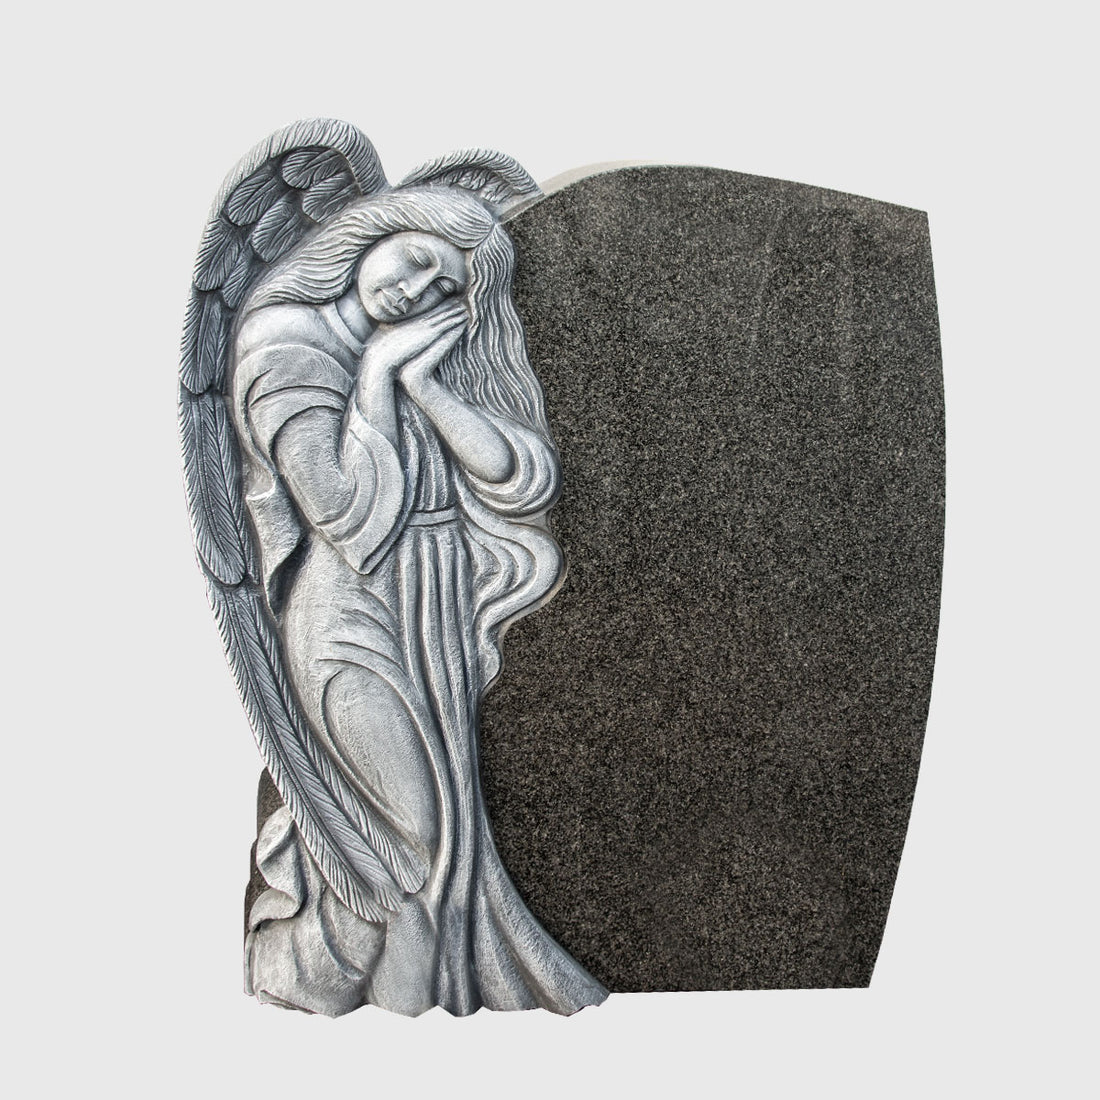 Grabstein aus Impala Granit mit Engel